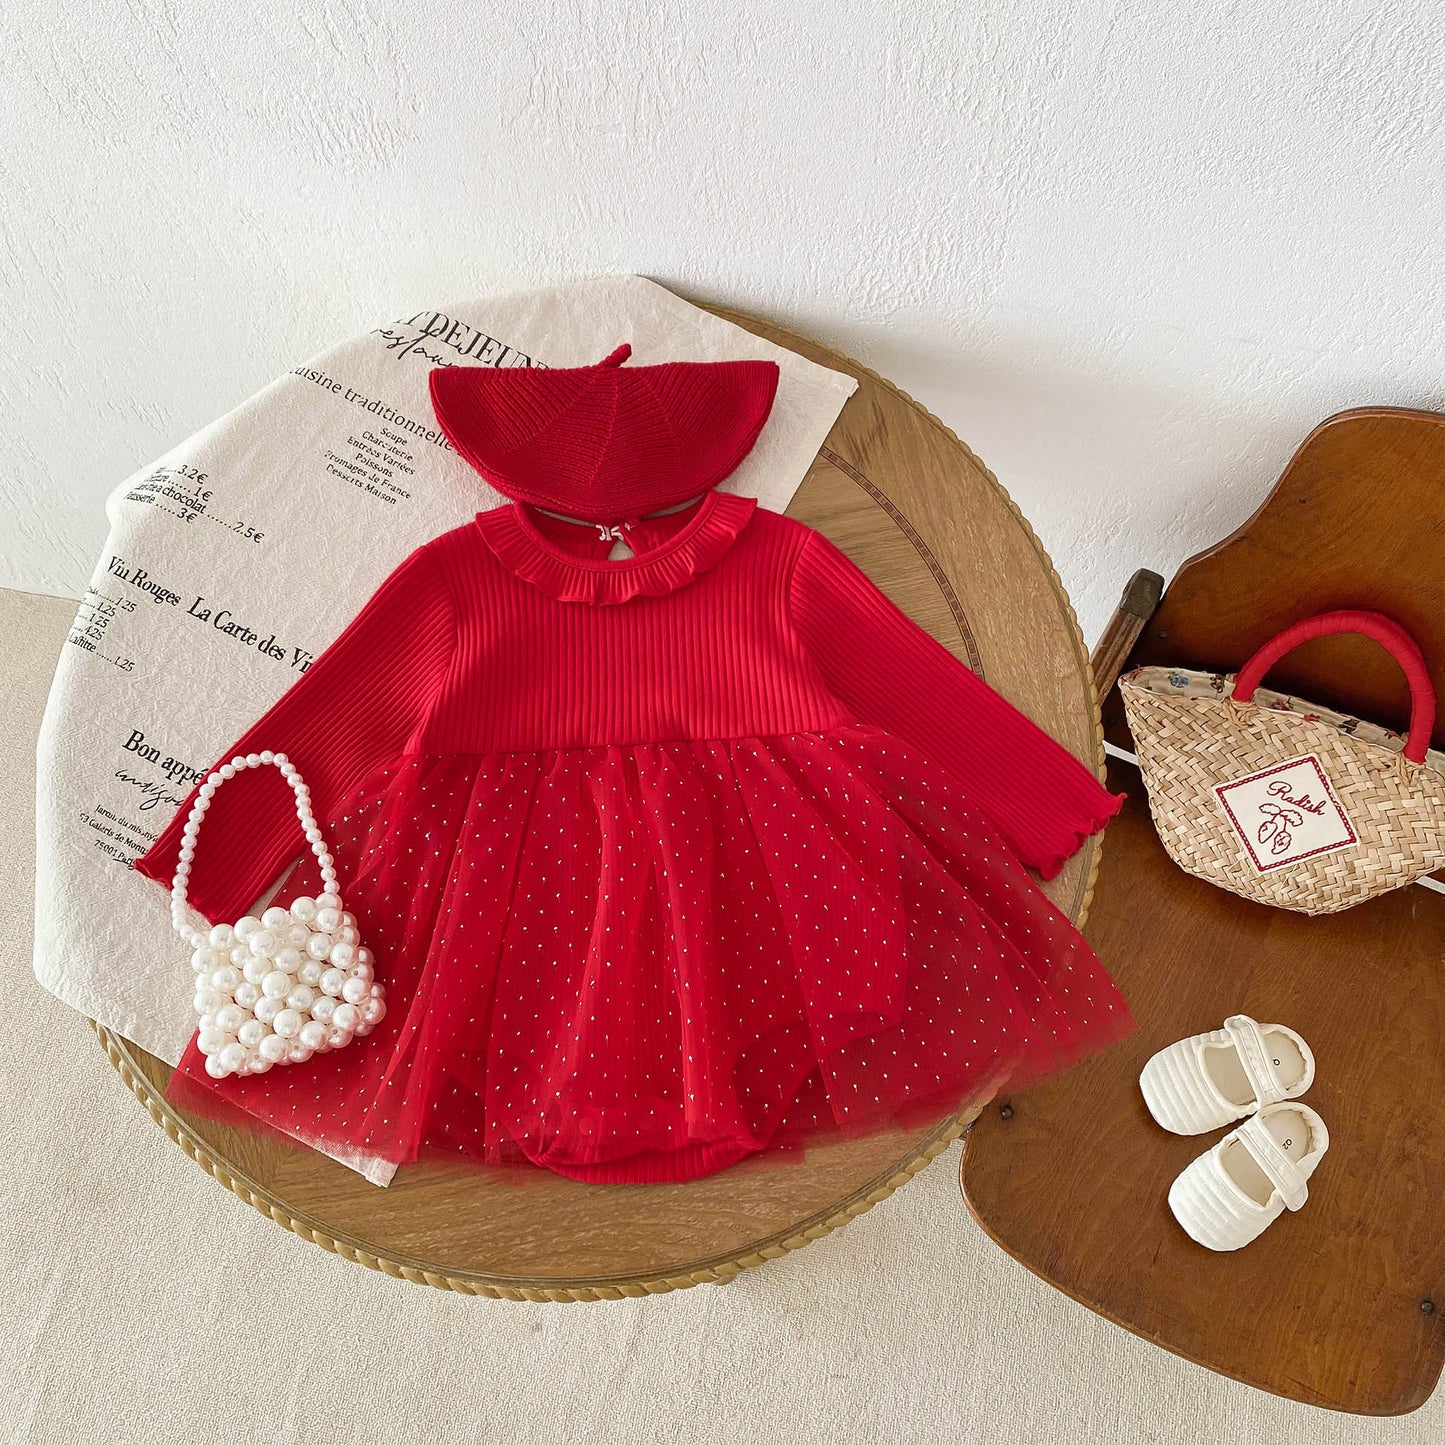 Spring New Design Baby Red Long Sleeves Mesh Onesie Dress For Girls